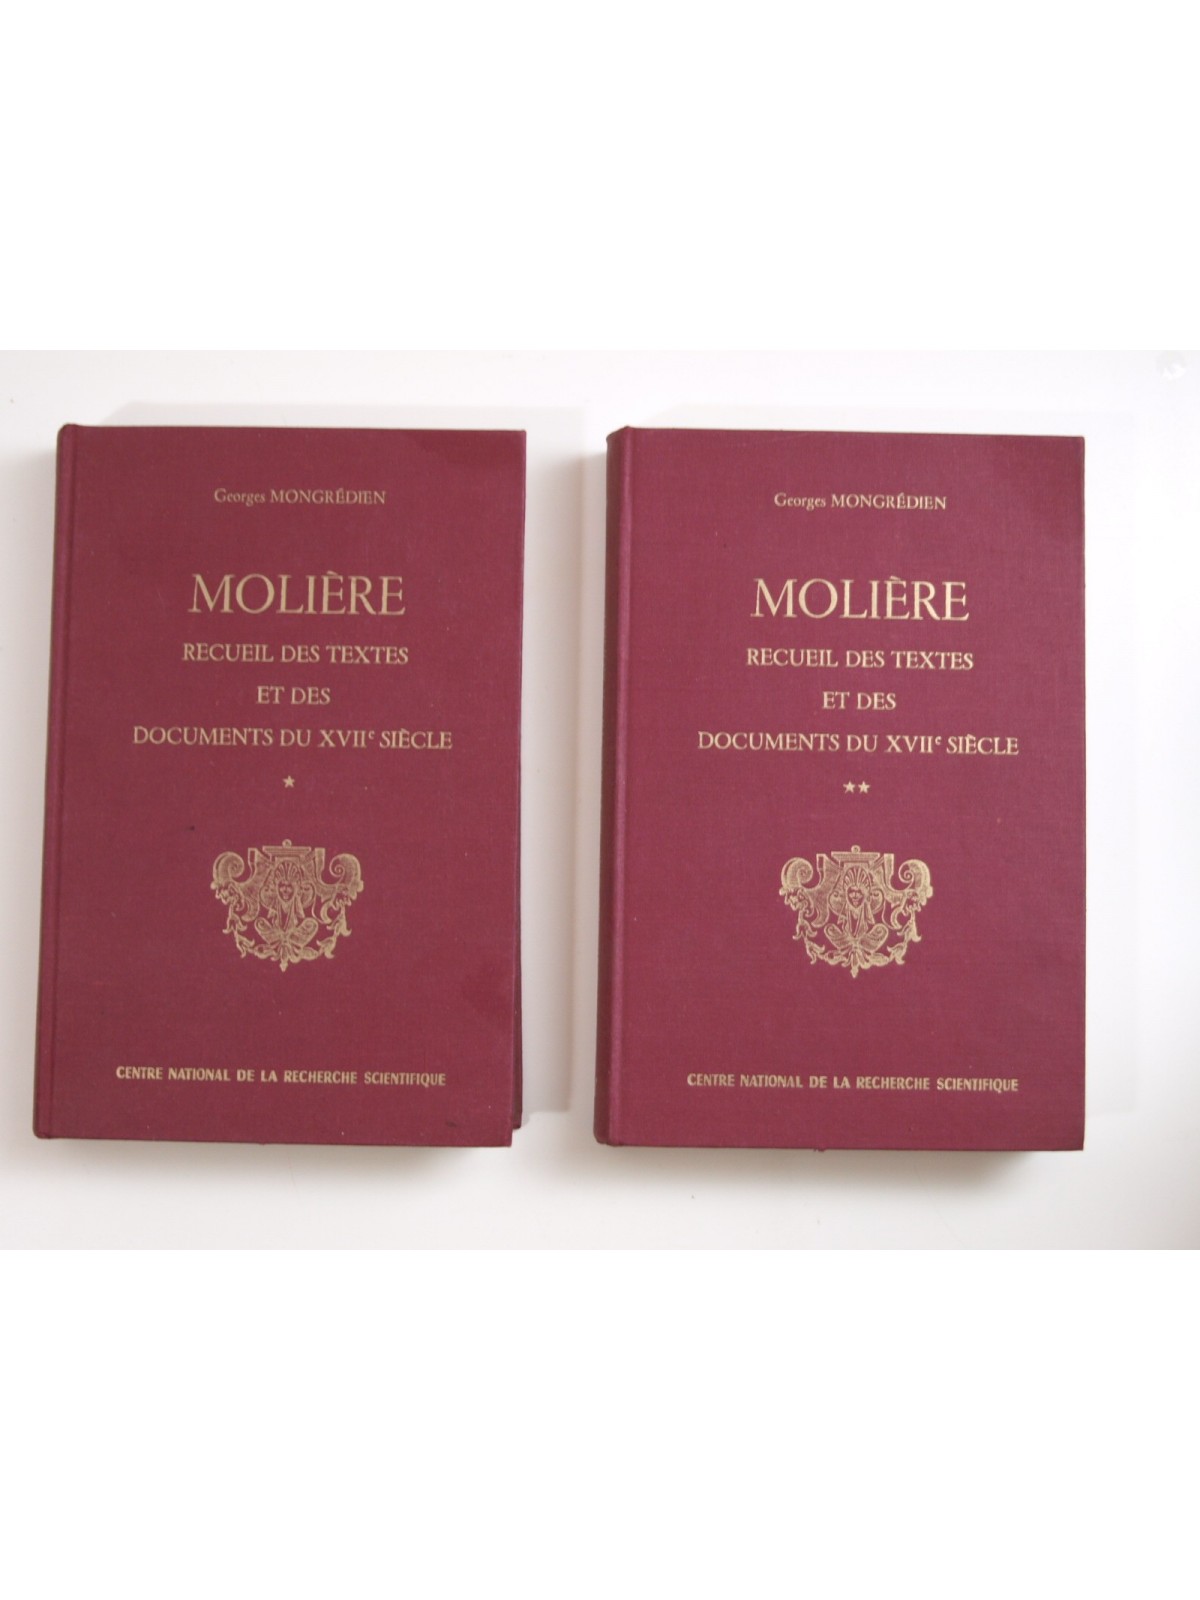 Mongrédien G. : Recueil des textes et des documents du XVIIe siècle relatifs à Molière. 2 tomes